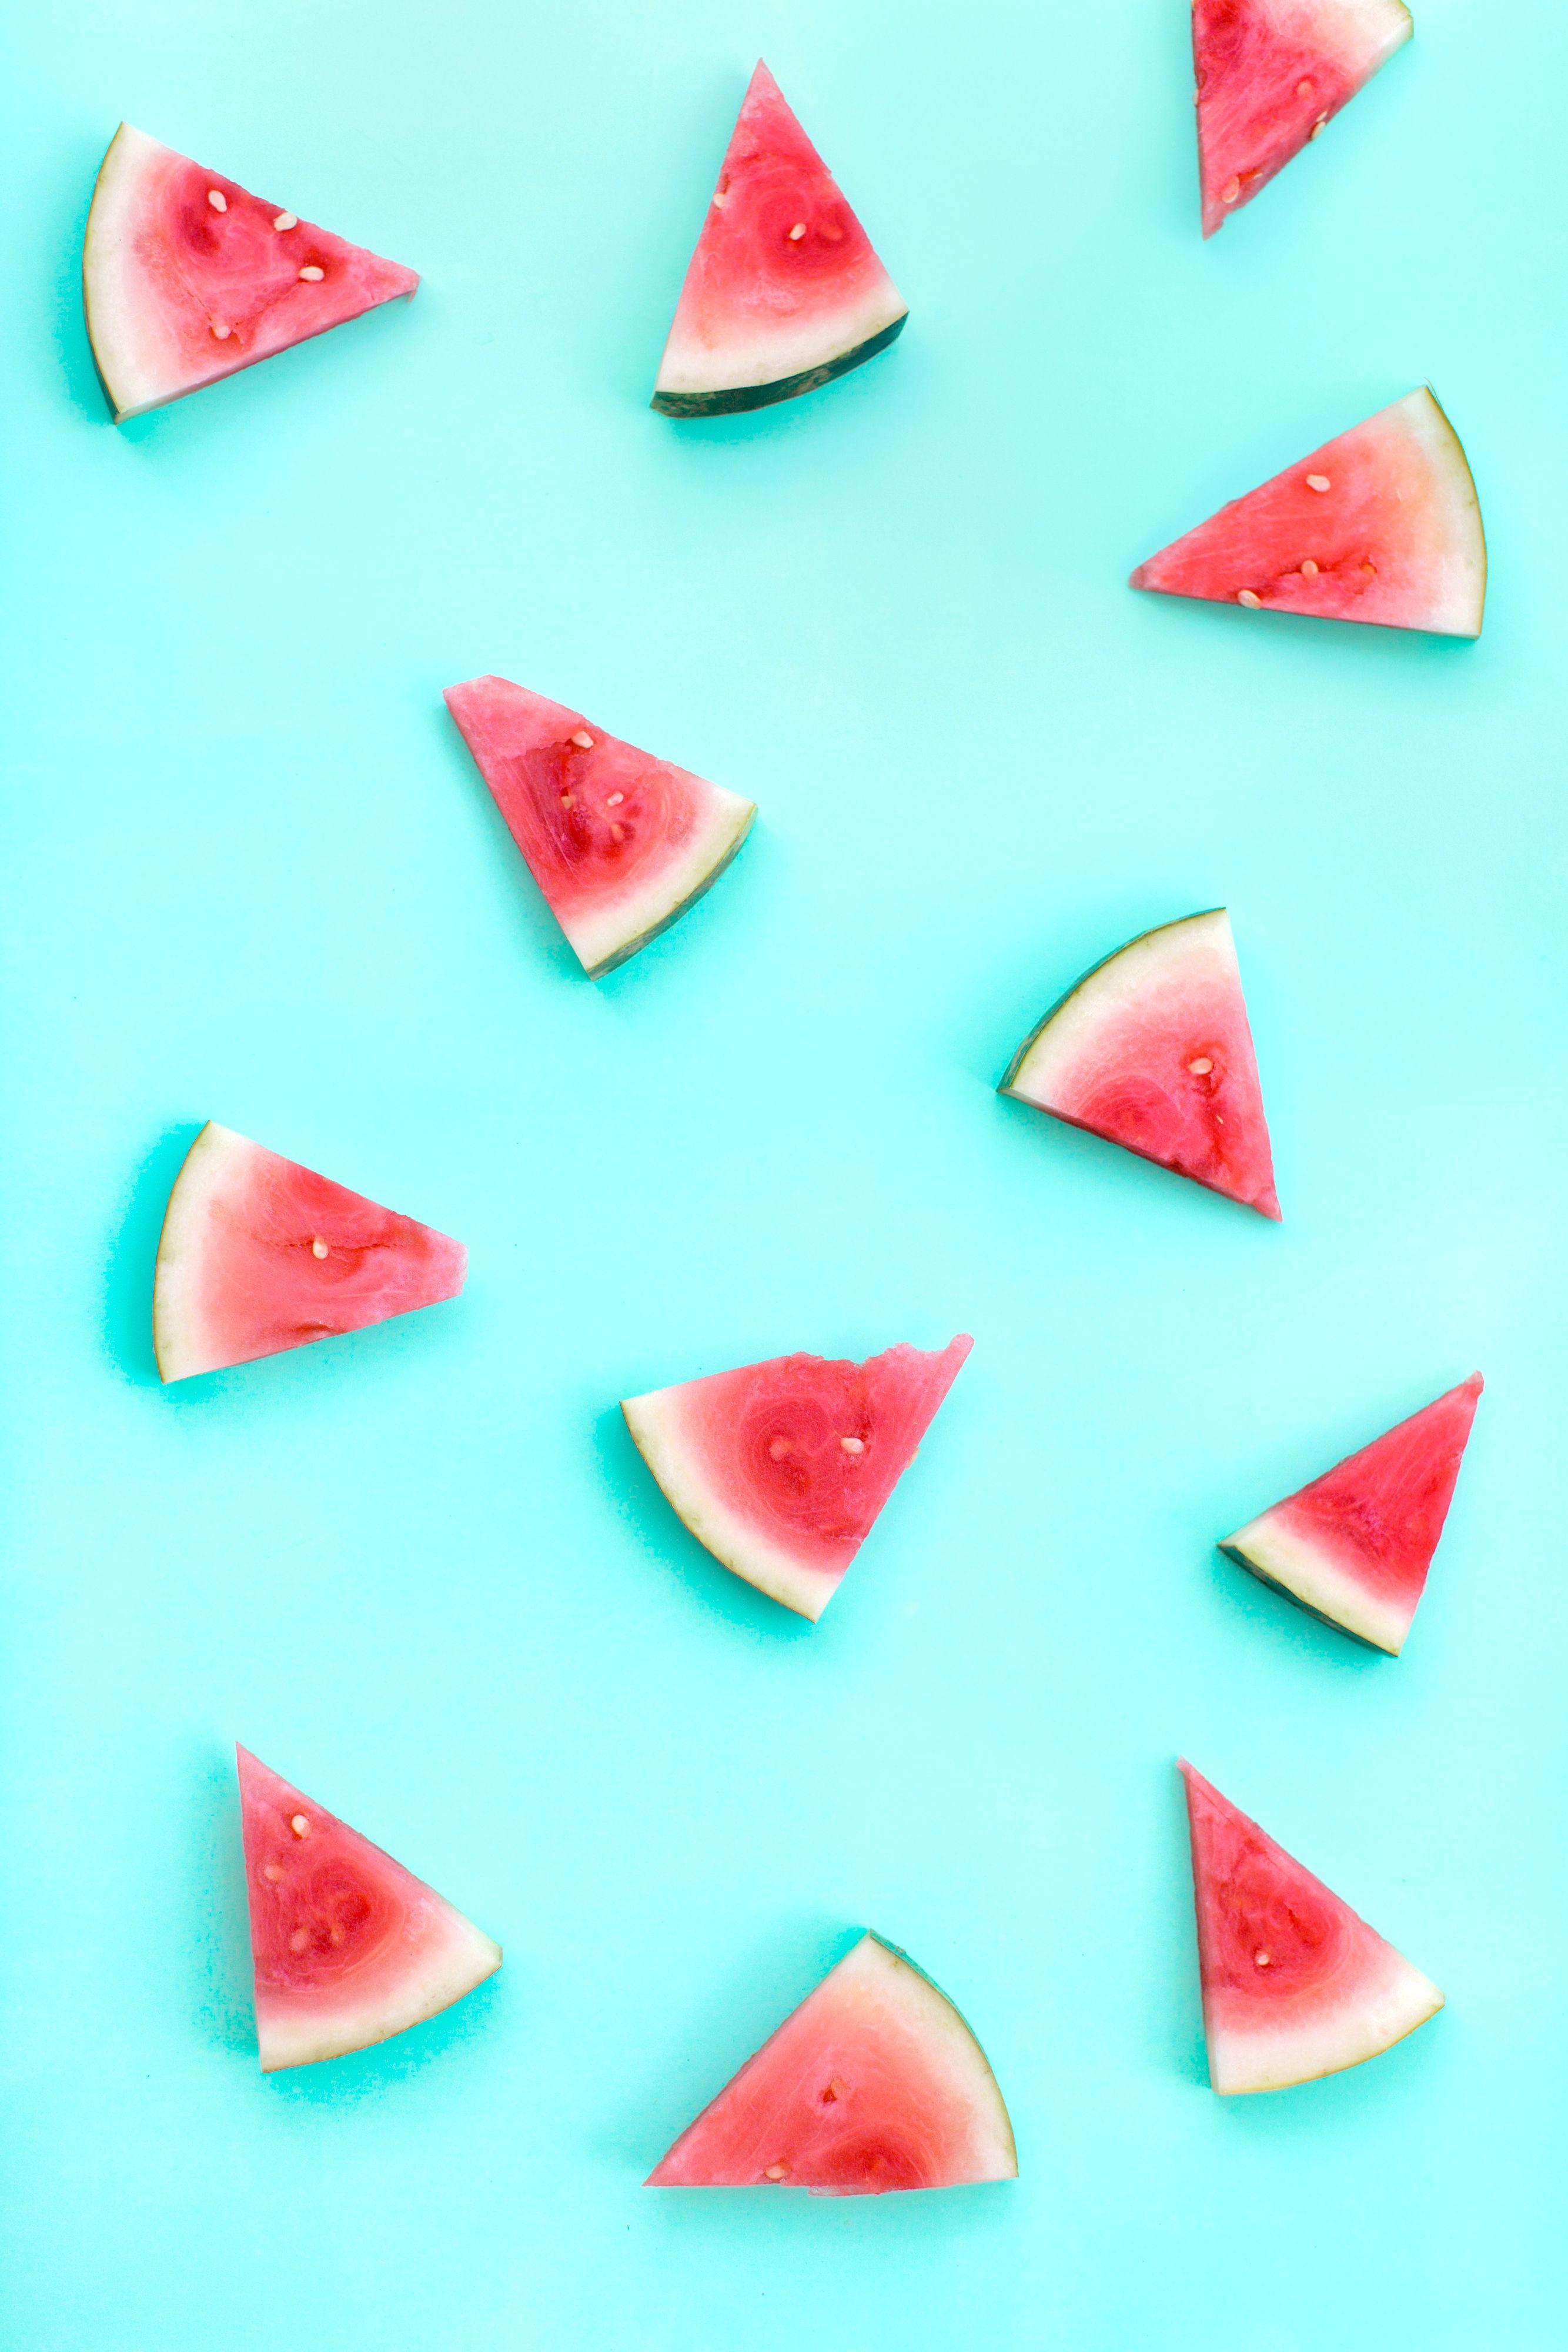 Watermelon summer cell phone wallpaper. Wallpaper iphone summer, Watermelon wallpaper, Pineapple wallpaper